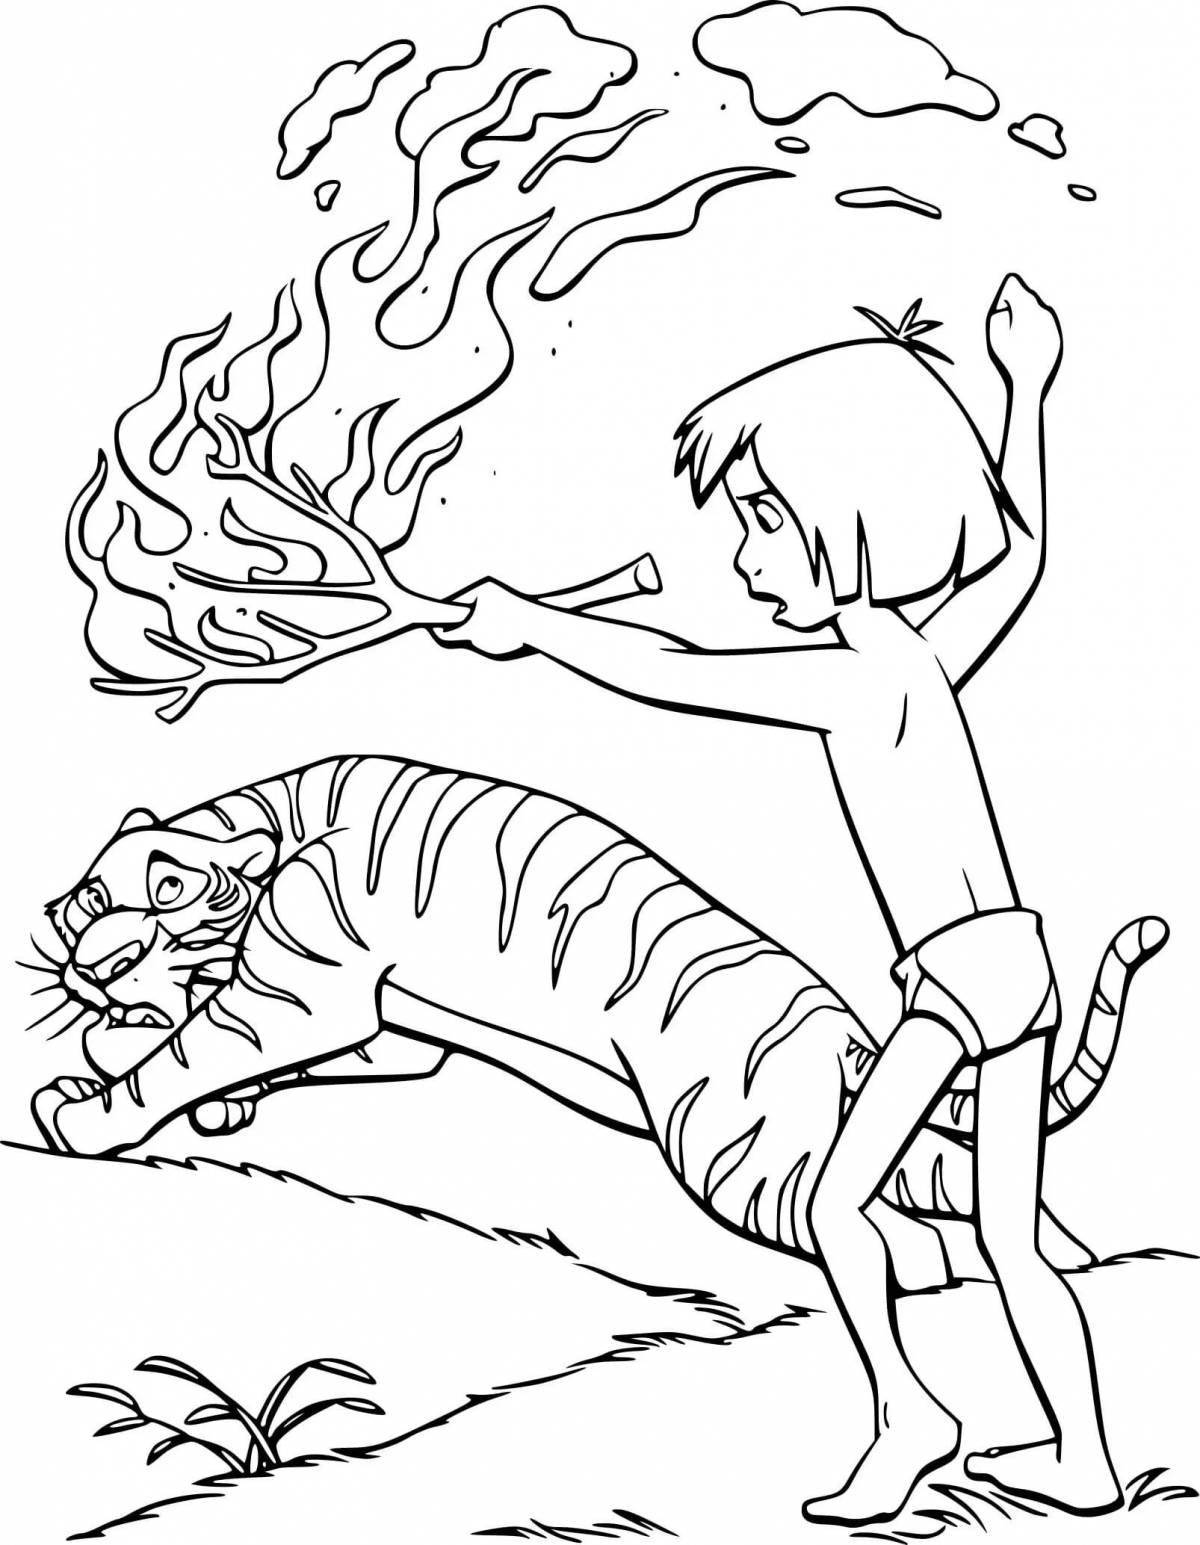 Mowgli Sherkhan's elegant coloring book